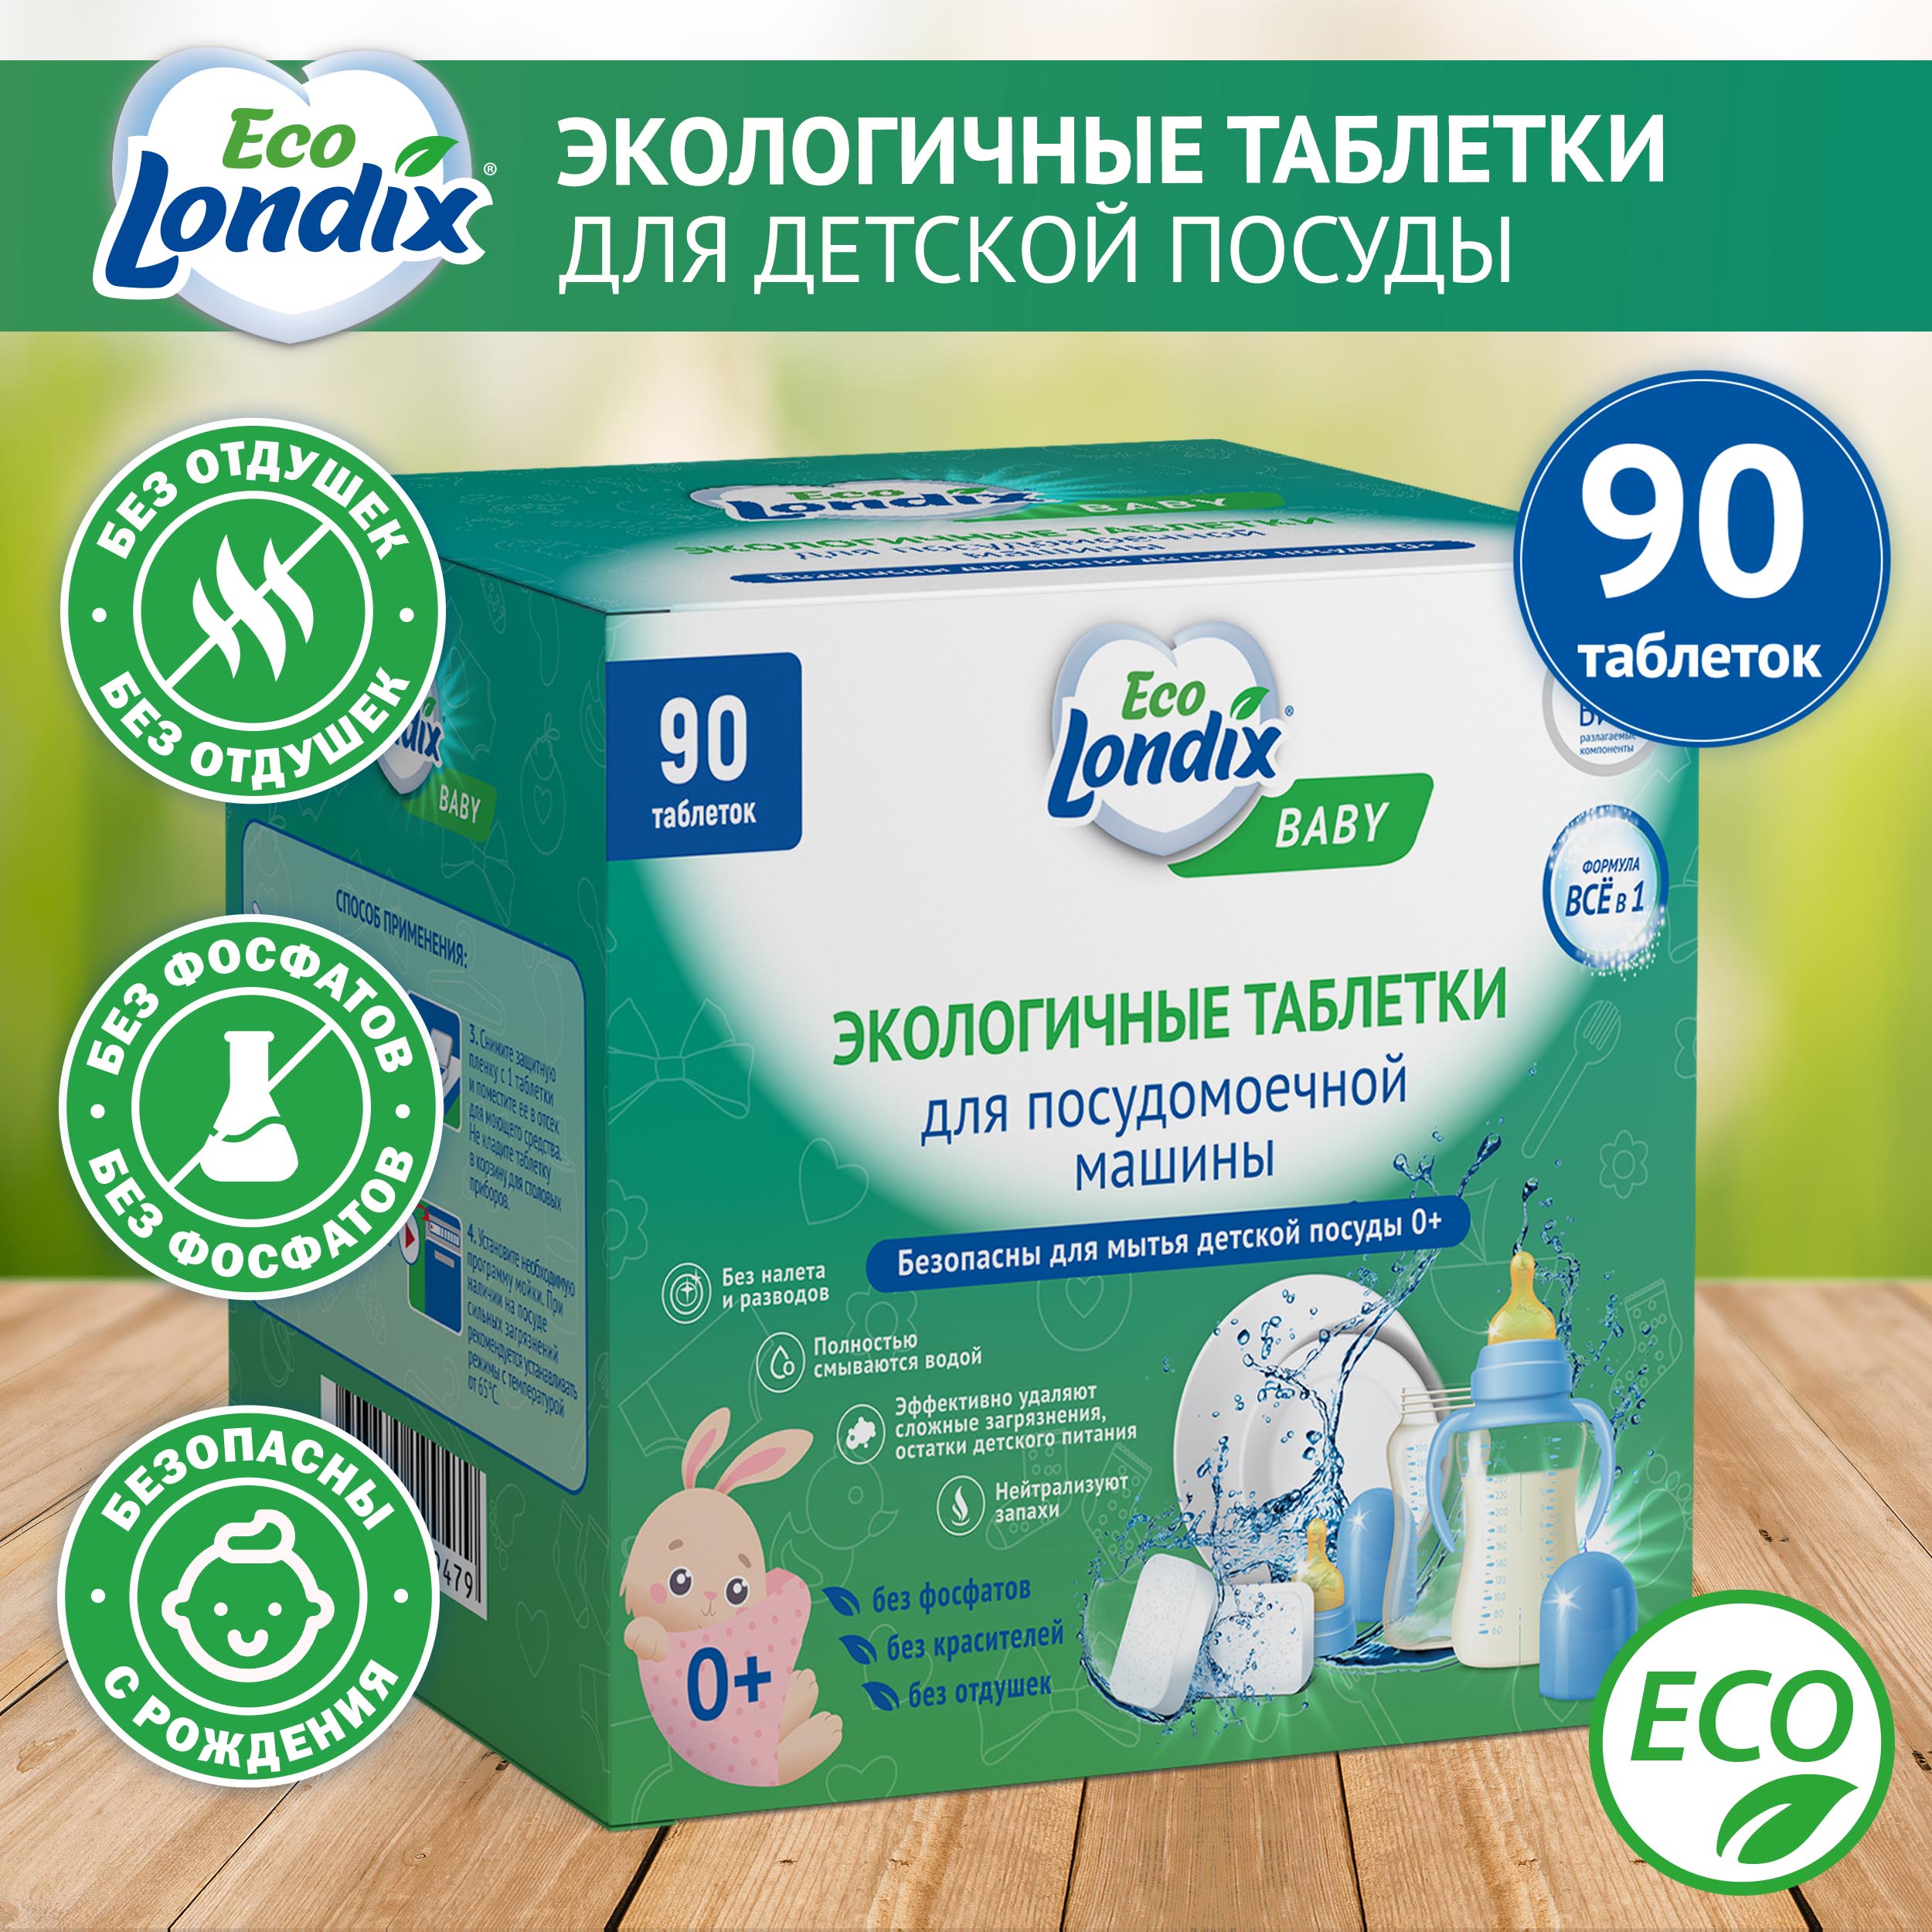 Экологичные таблетки для посудомоечной машины для детской посуды Eco Londix Baby, 90 шт.